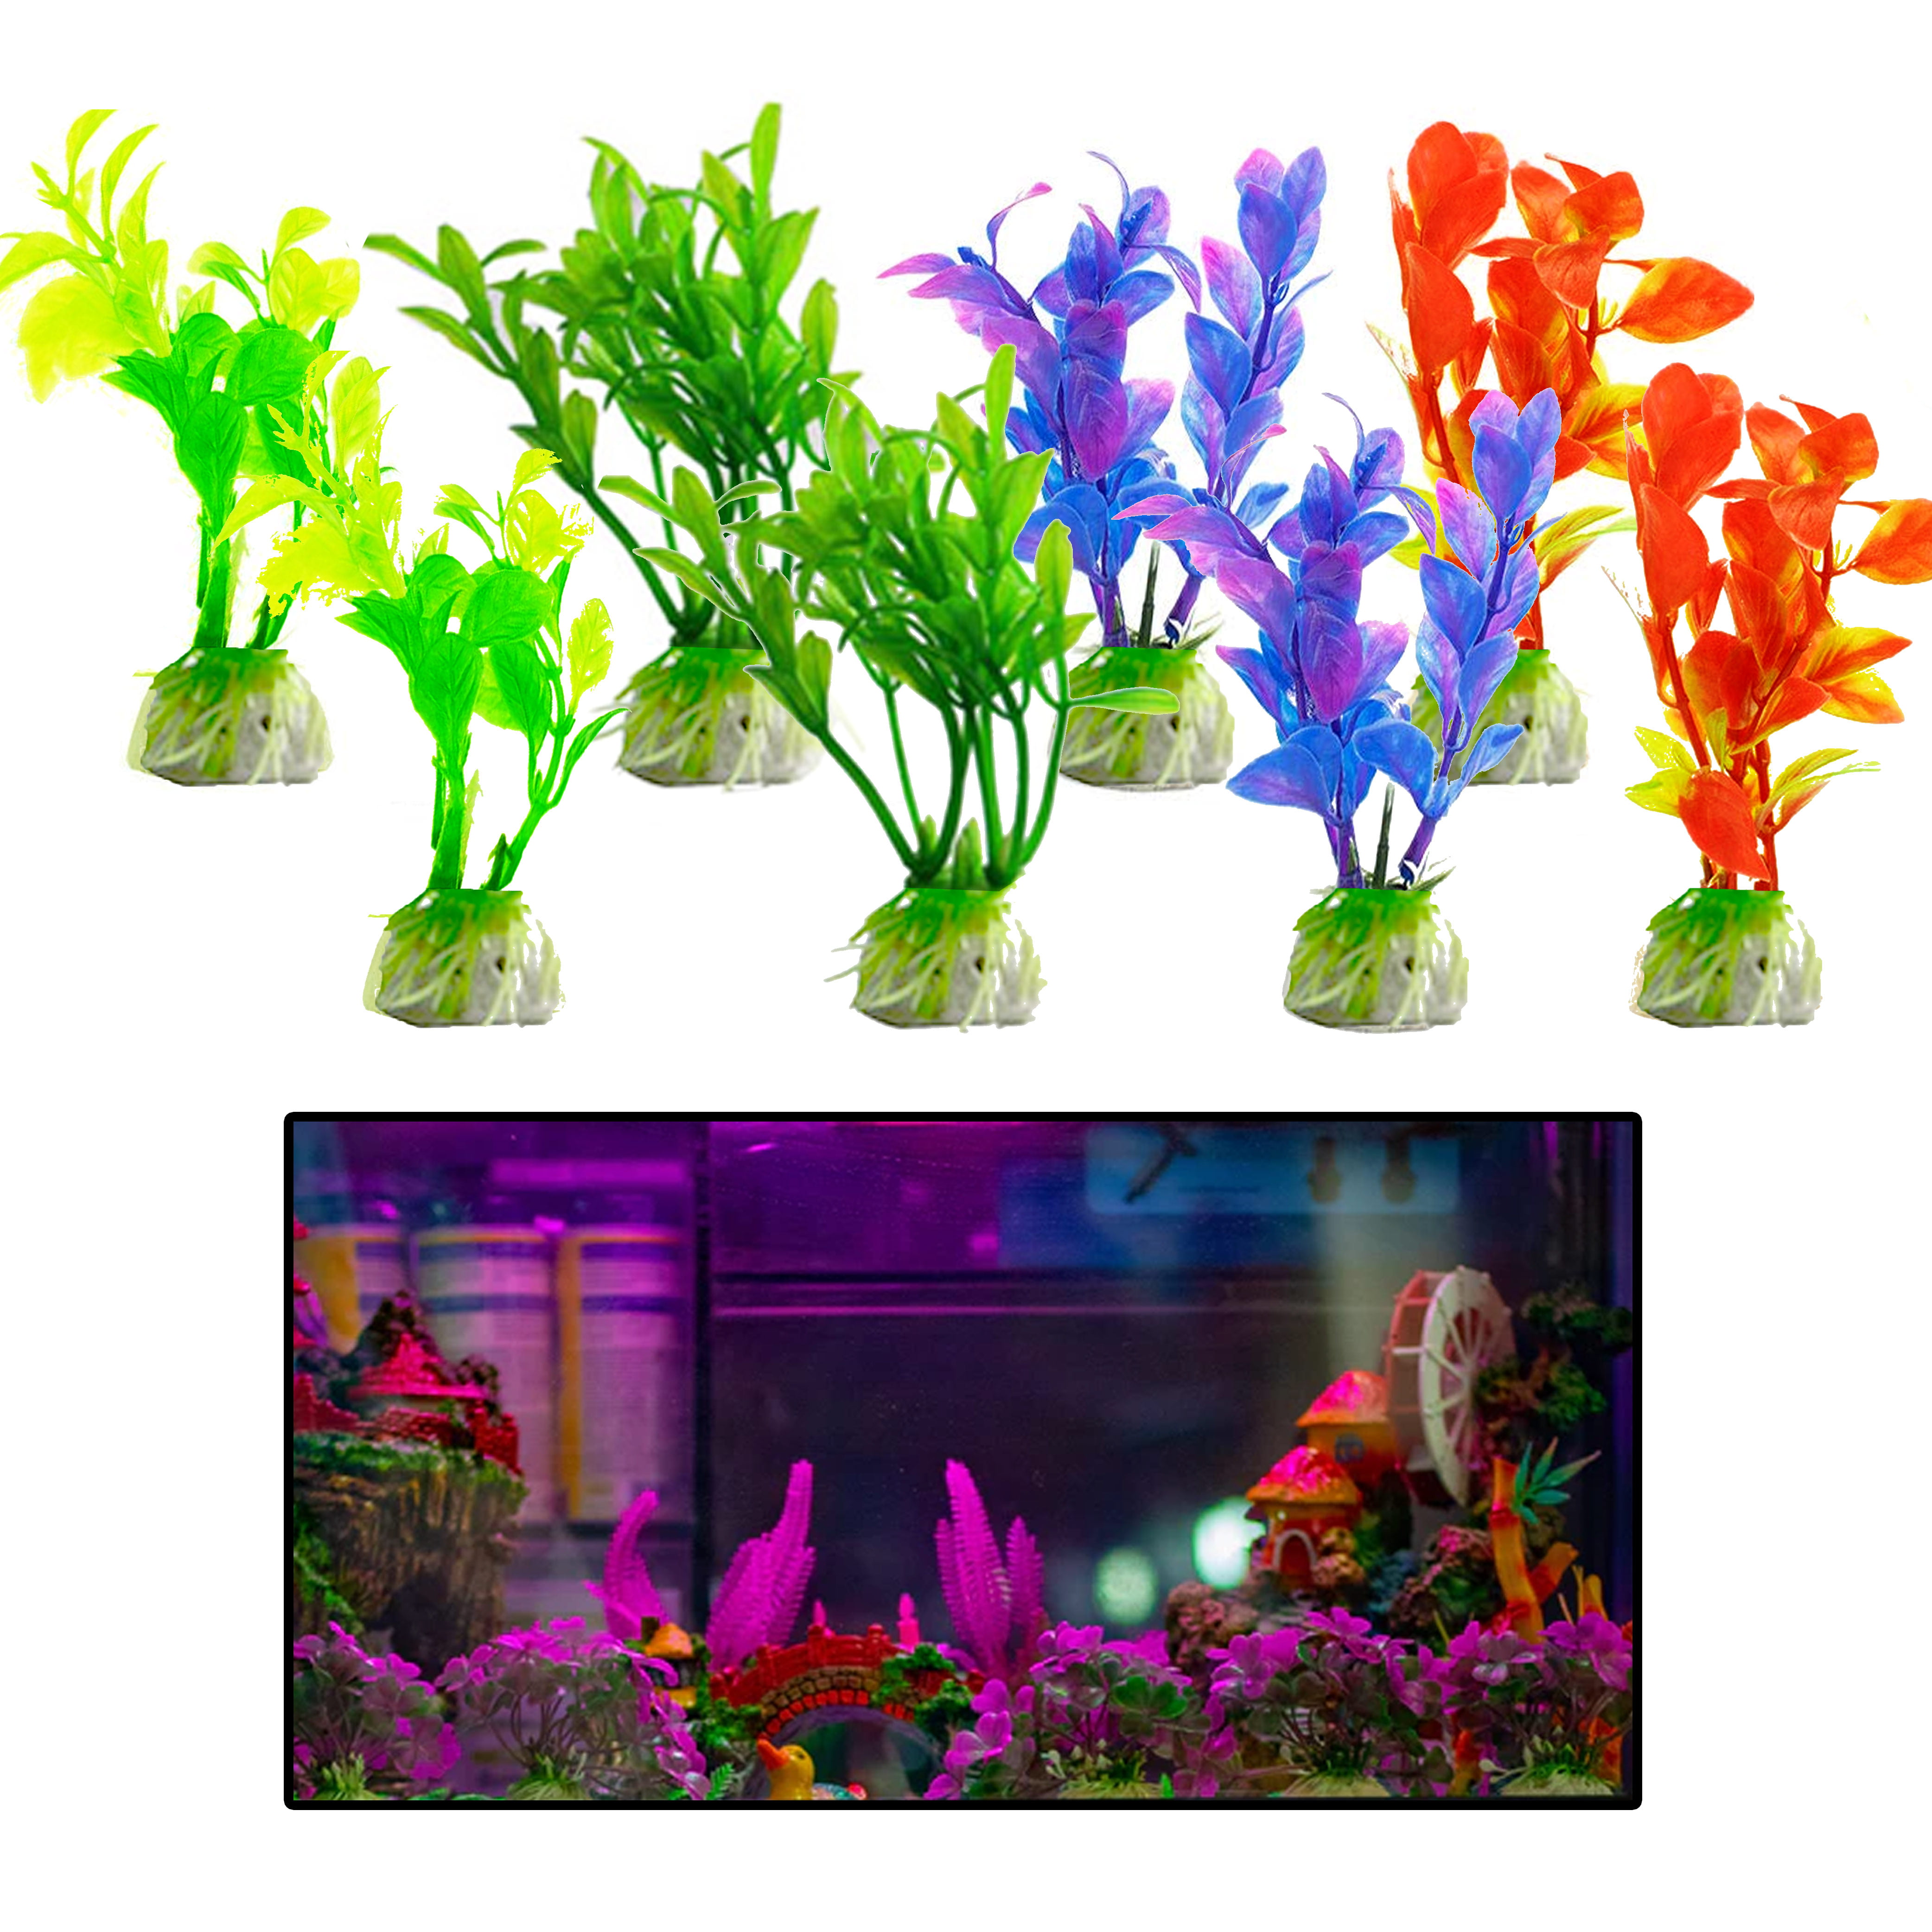 Plastic Fish Tank Plant Decorations Ornaments Large Aquatic Plants Landscape Artificial Aquarium Plants 2 Pcs, Pink